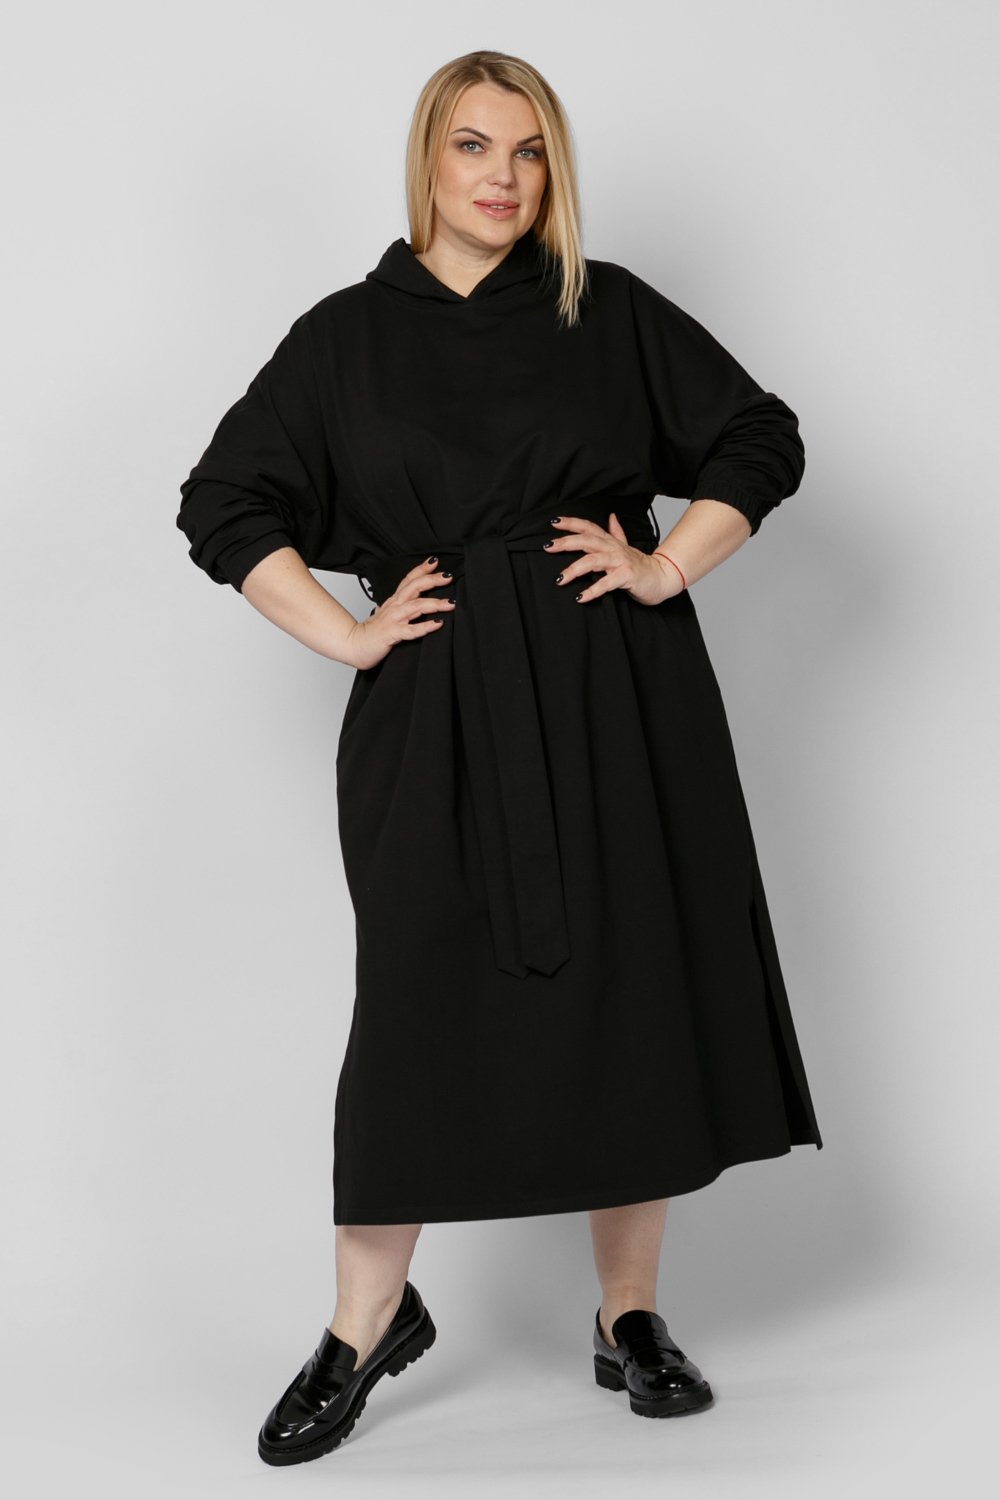 Платье женское ARTESSA PP83202BLK01 черное 52-54 RU